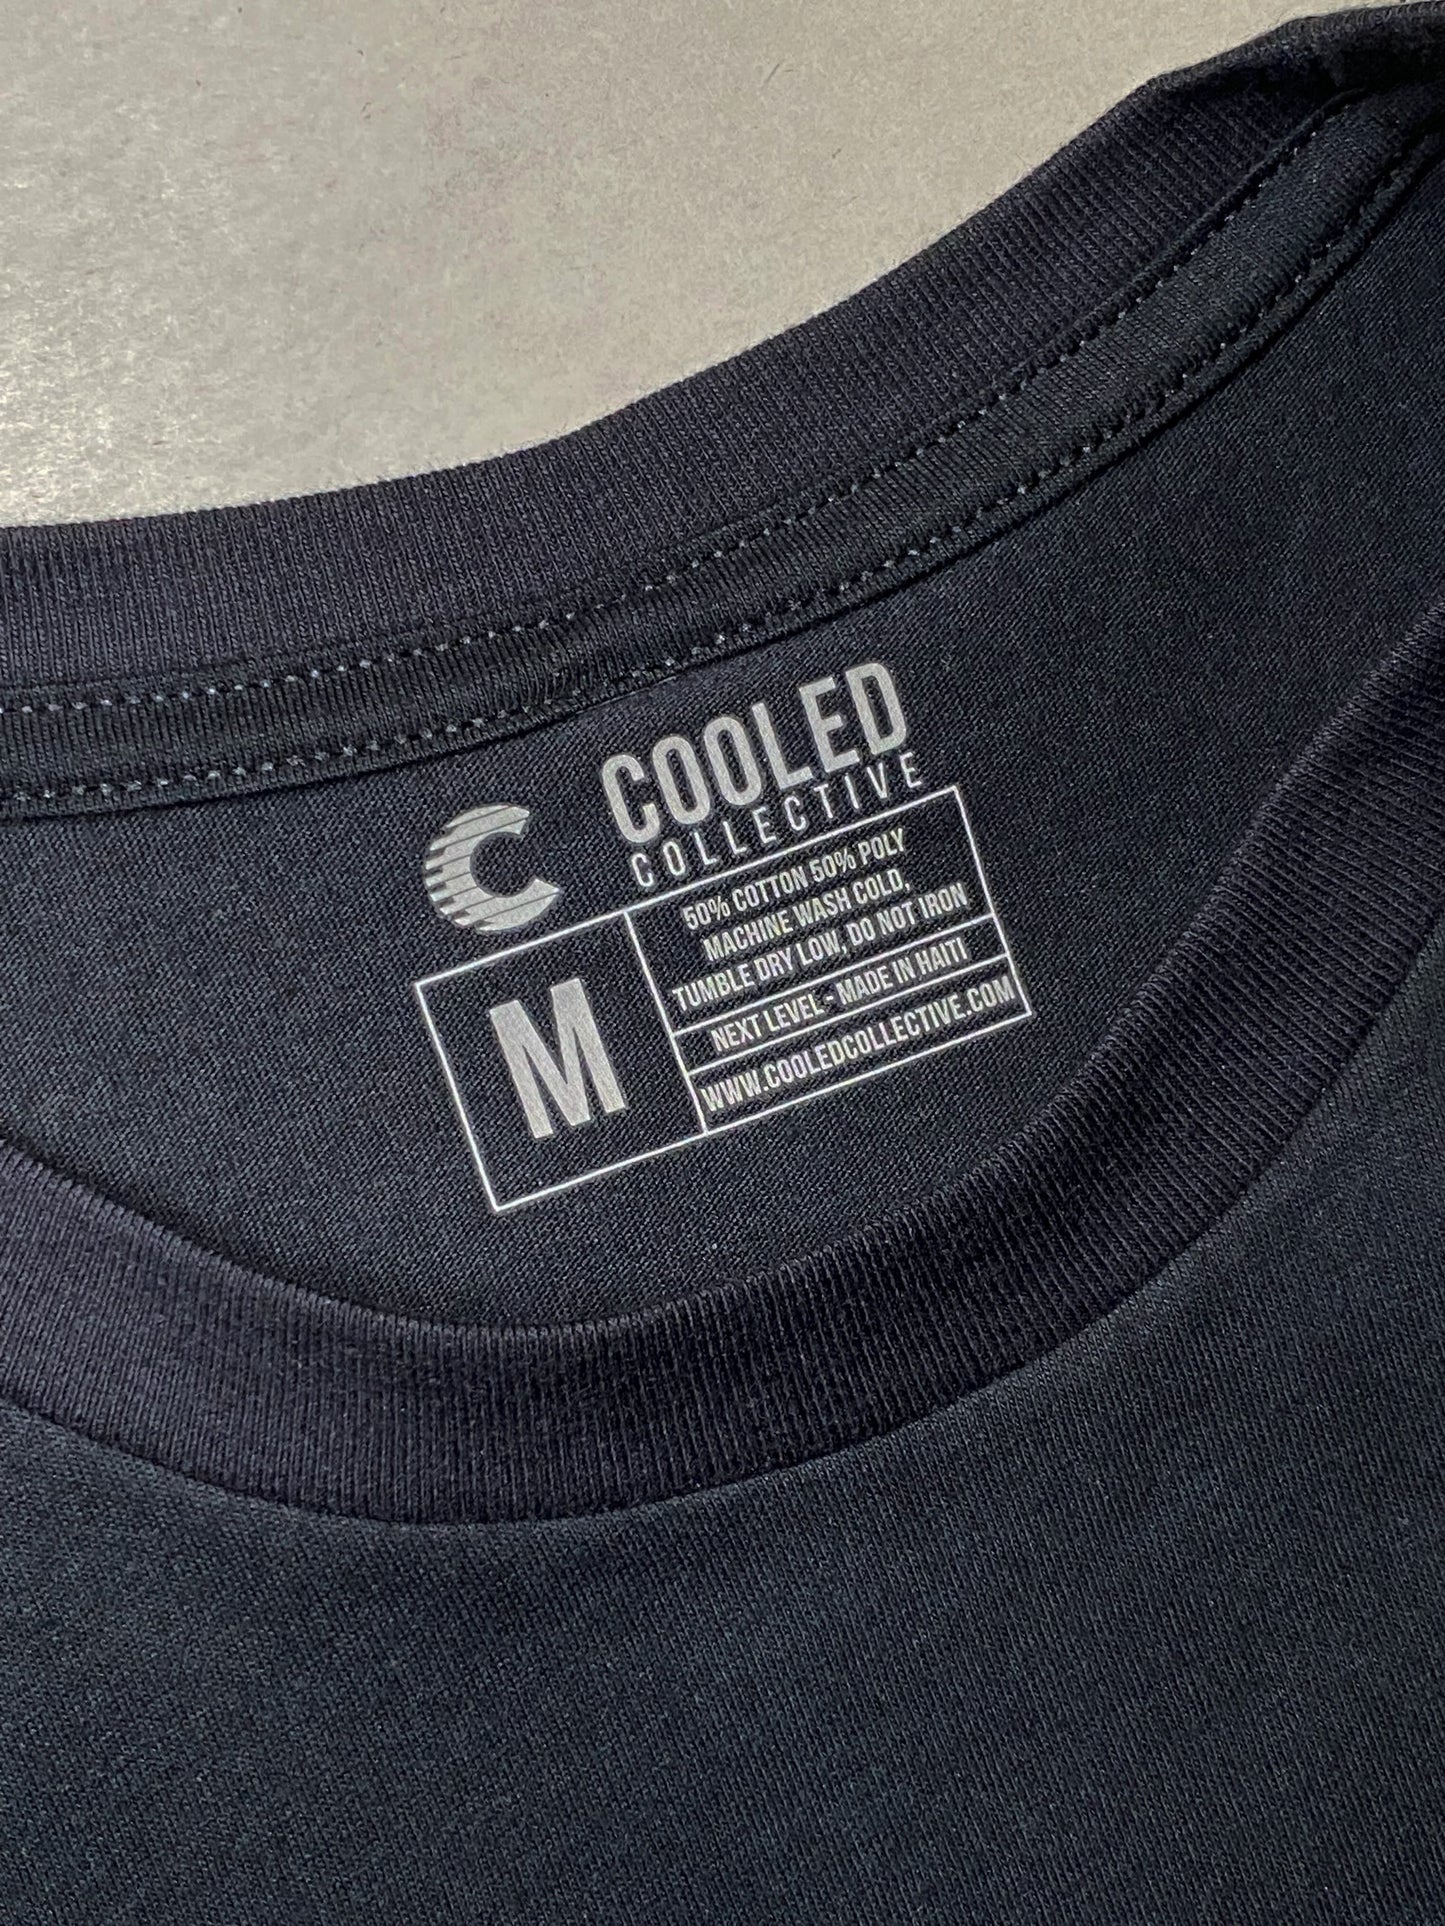 Air Cooled GT2 Spec Shirt